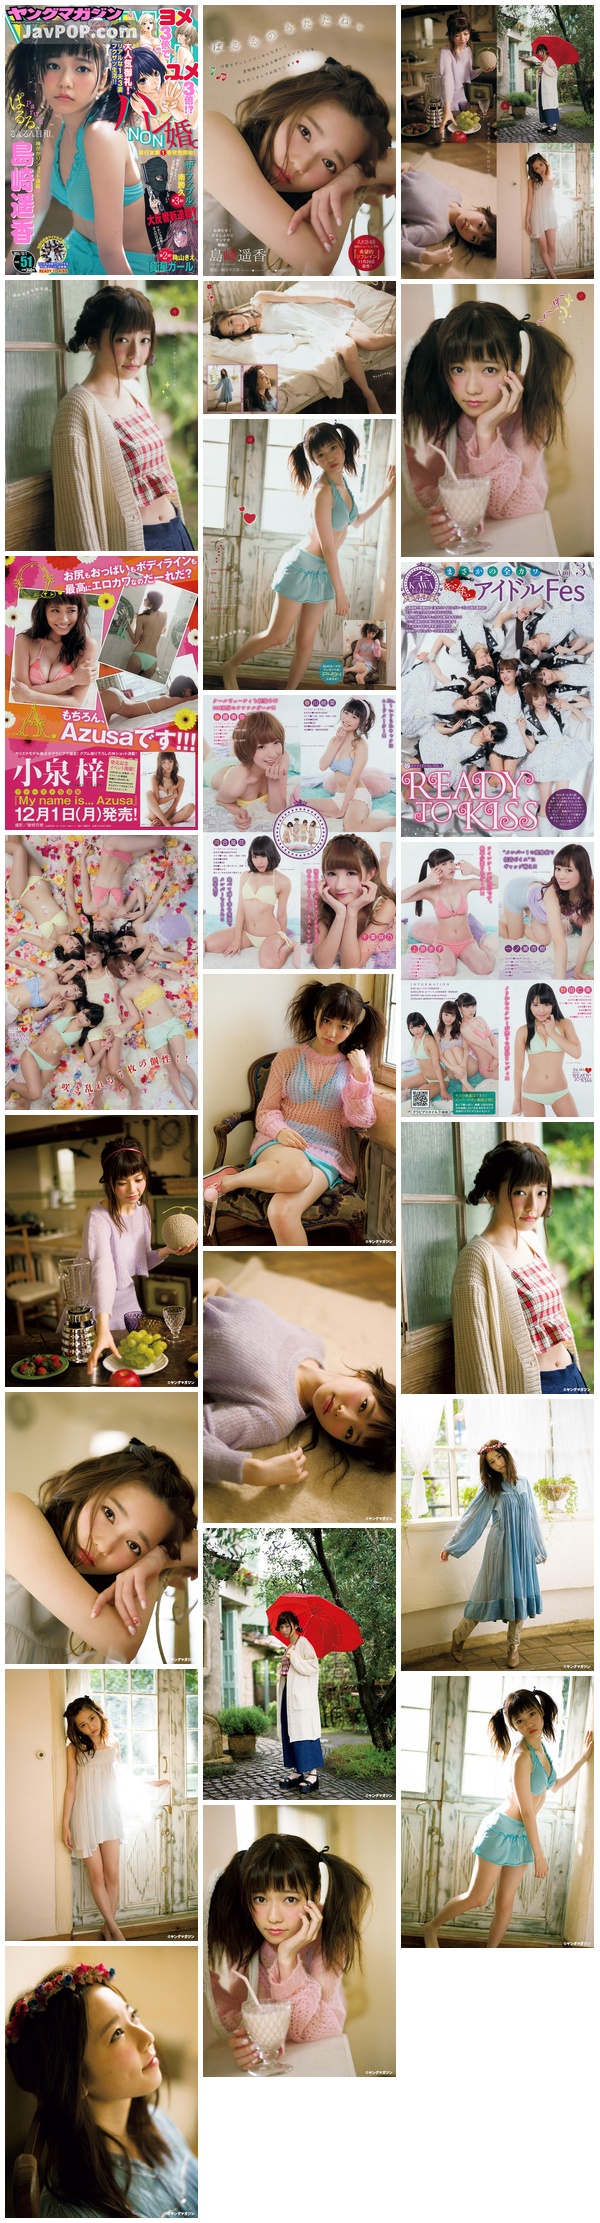 [Young_Magazine] 2014 No.51 Haruka Shimazaki 島崎遥香